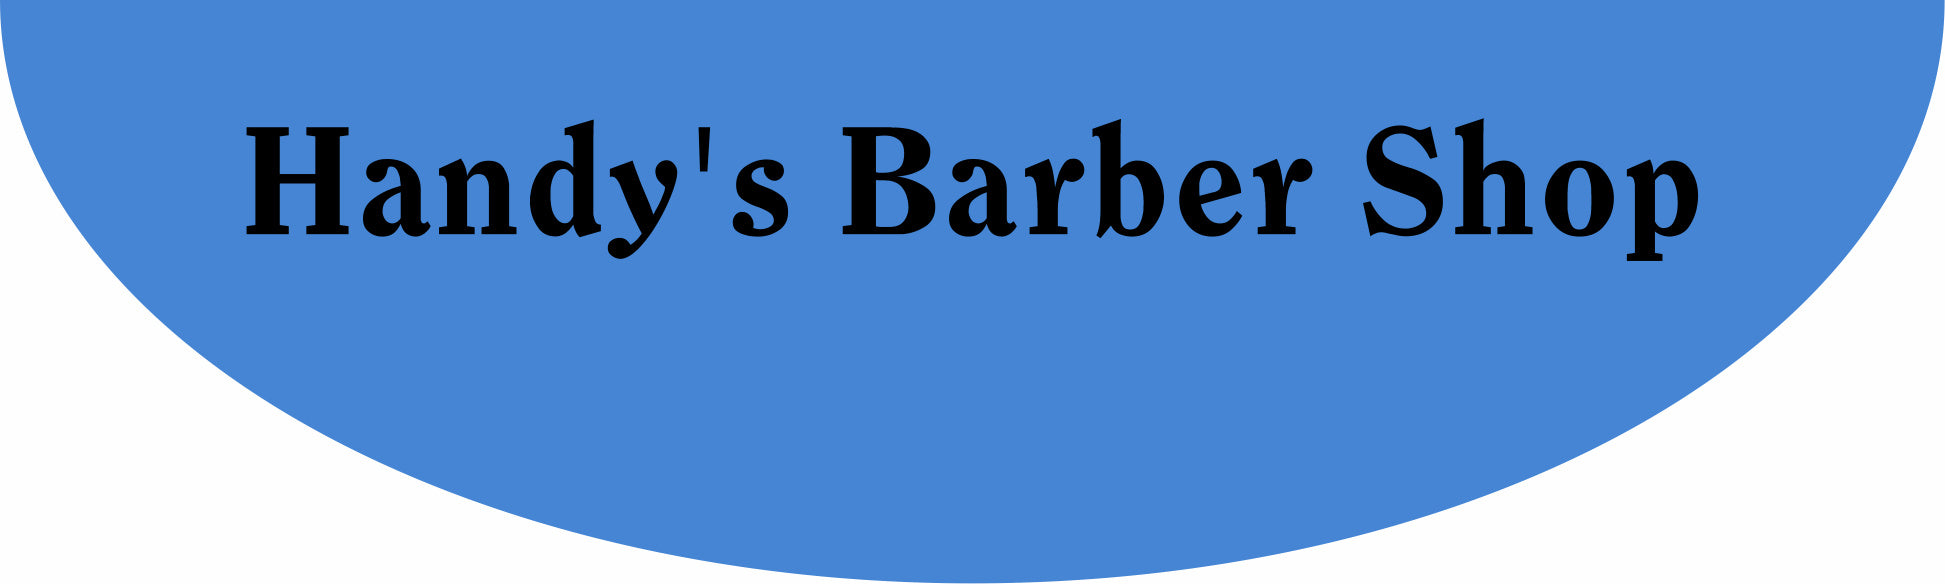 Handy's Barber Shop §